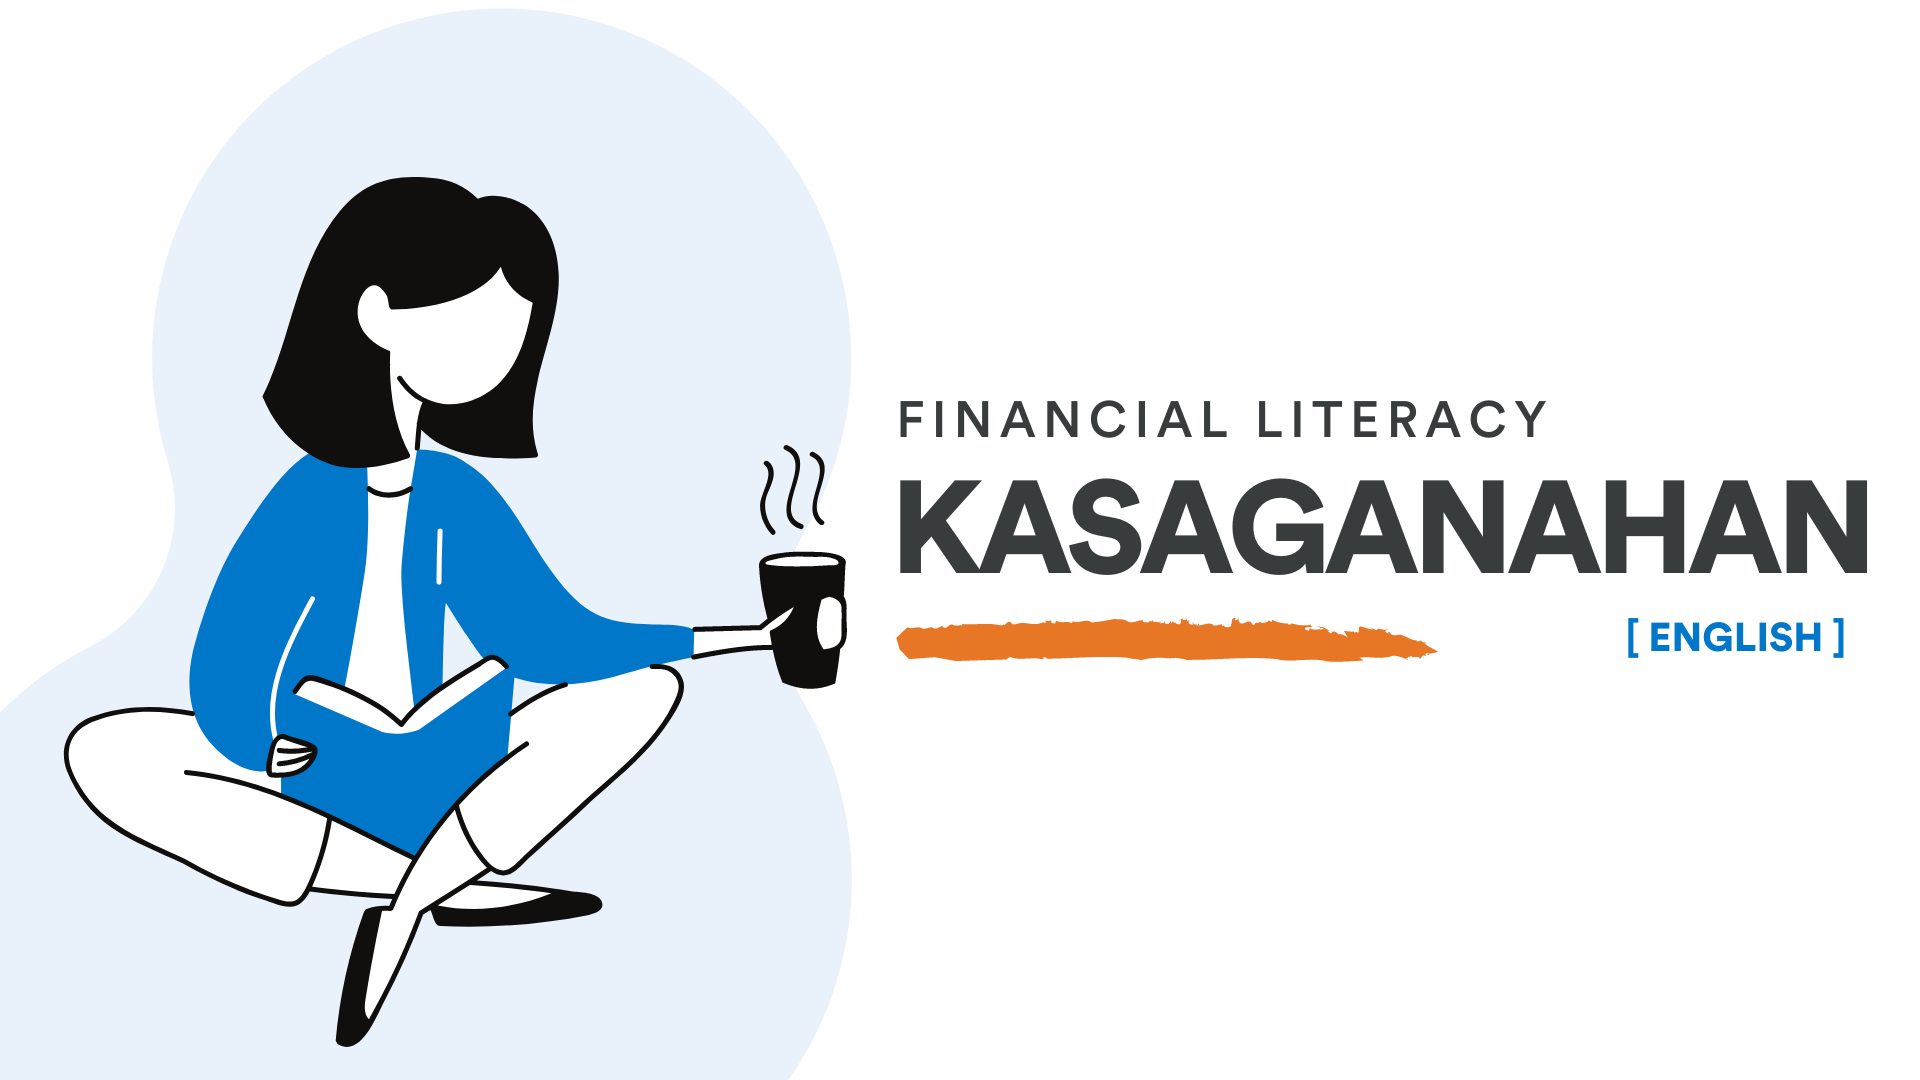 Kasaganahan: Financial Literacy [English]